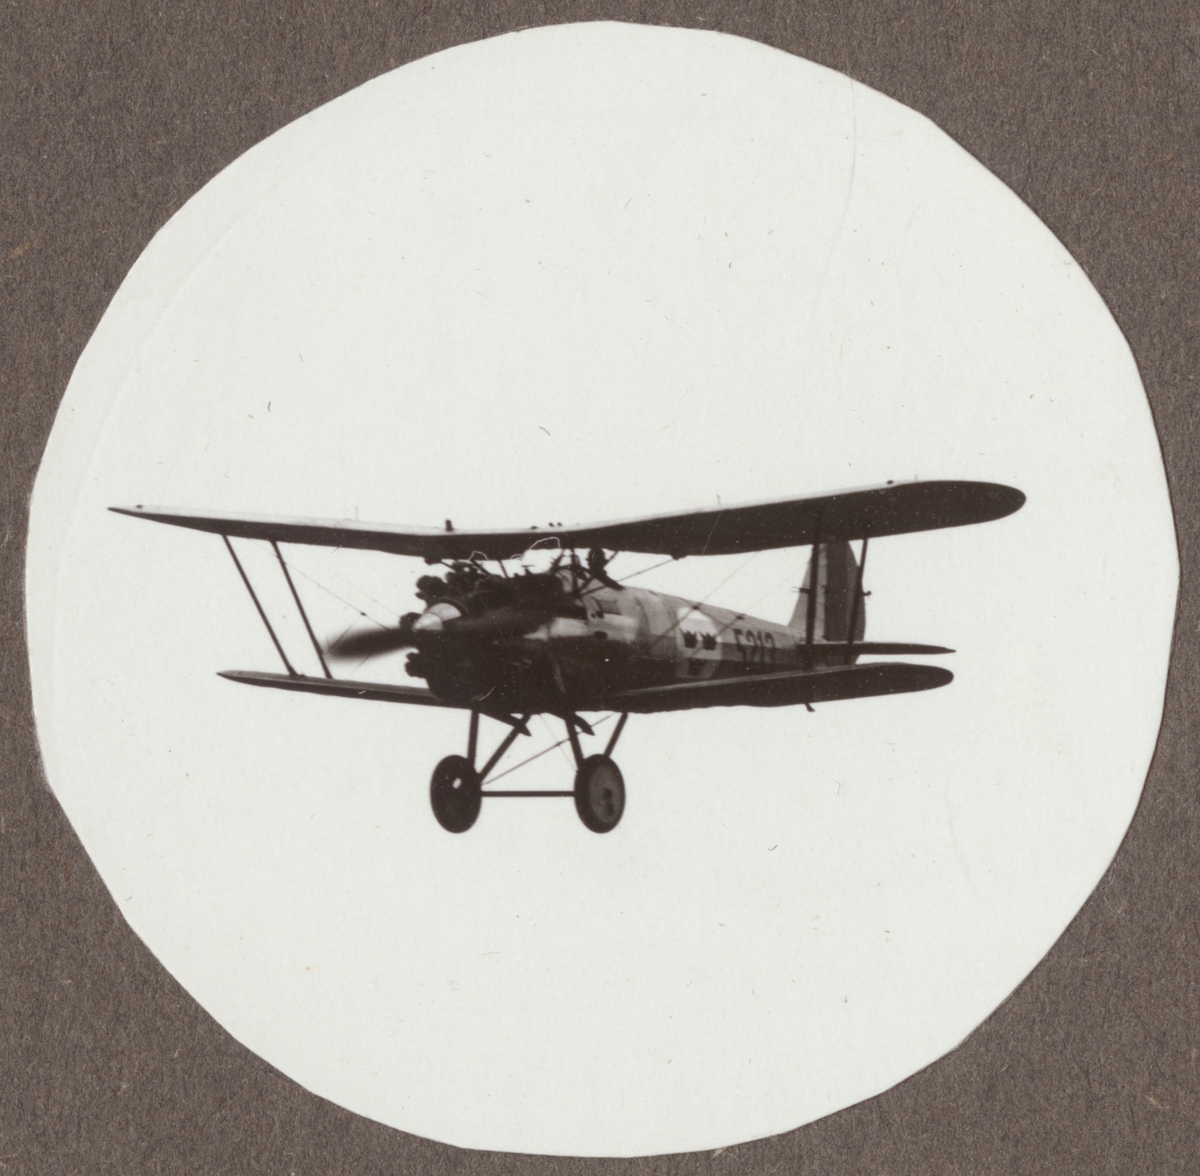 Flygplan J 7, Bristol Bulldog i luften på låg höjd. Vy snett framifrån.

Text vid foto: "Bristol Bulldog 450 Jupiter J 7 1931."